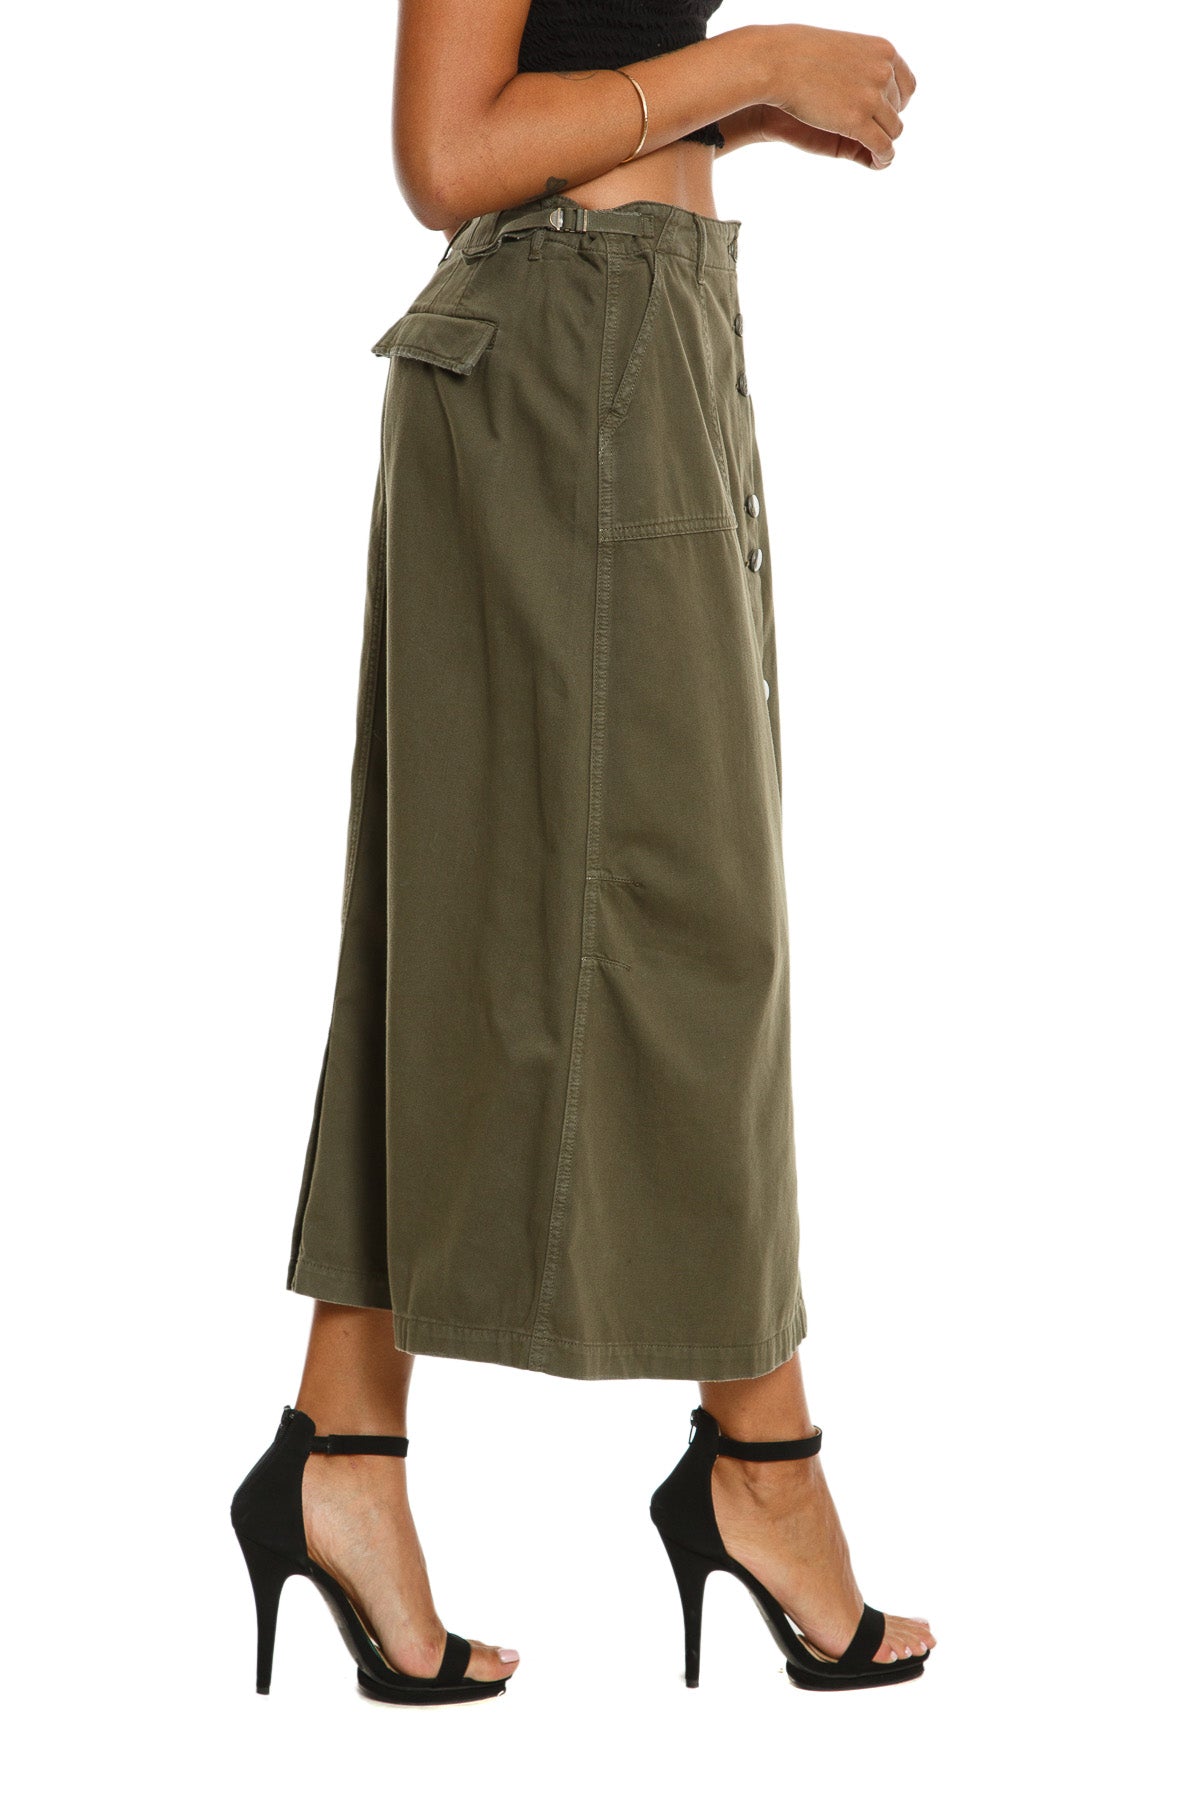 Long skirt in Olive